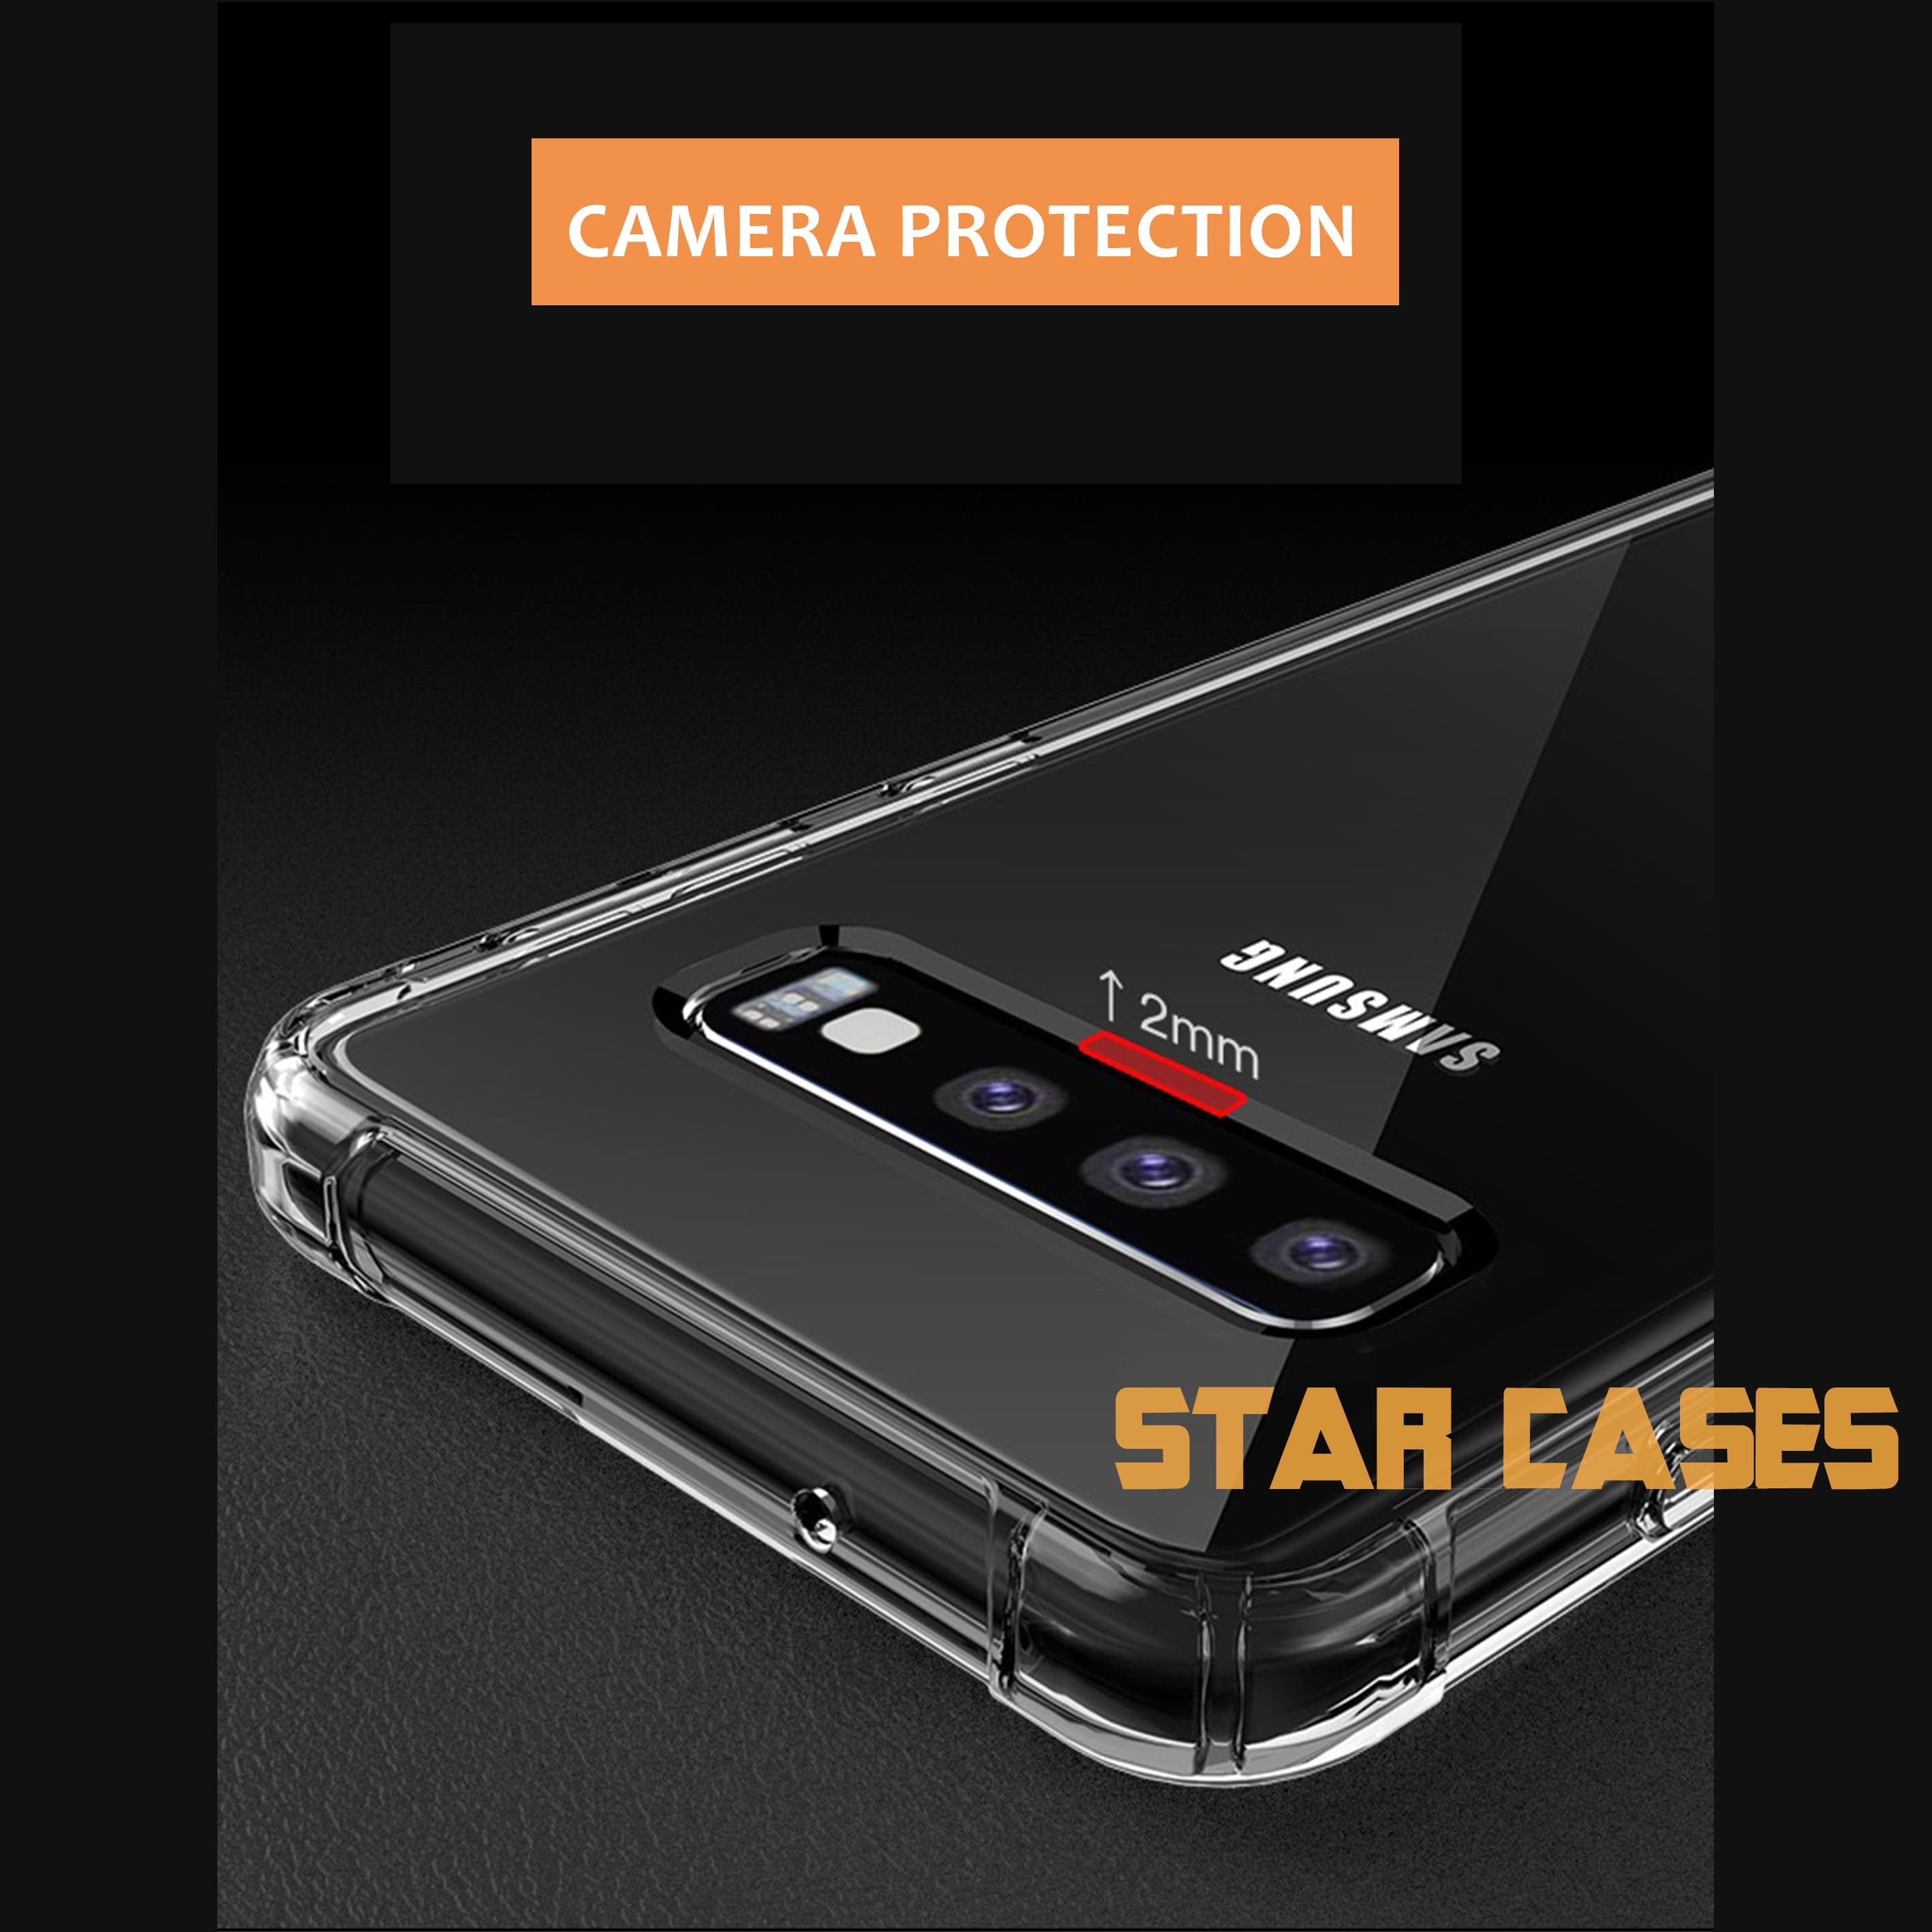 Samsung A23 Clear Soft Bumper Case